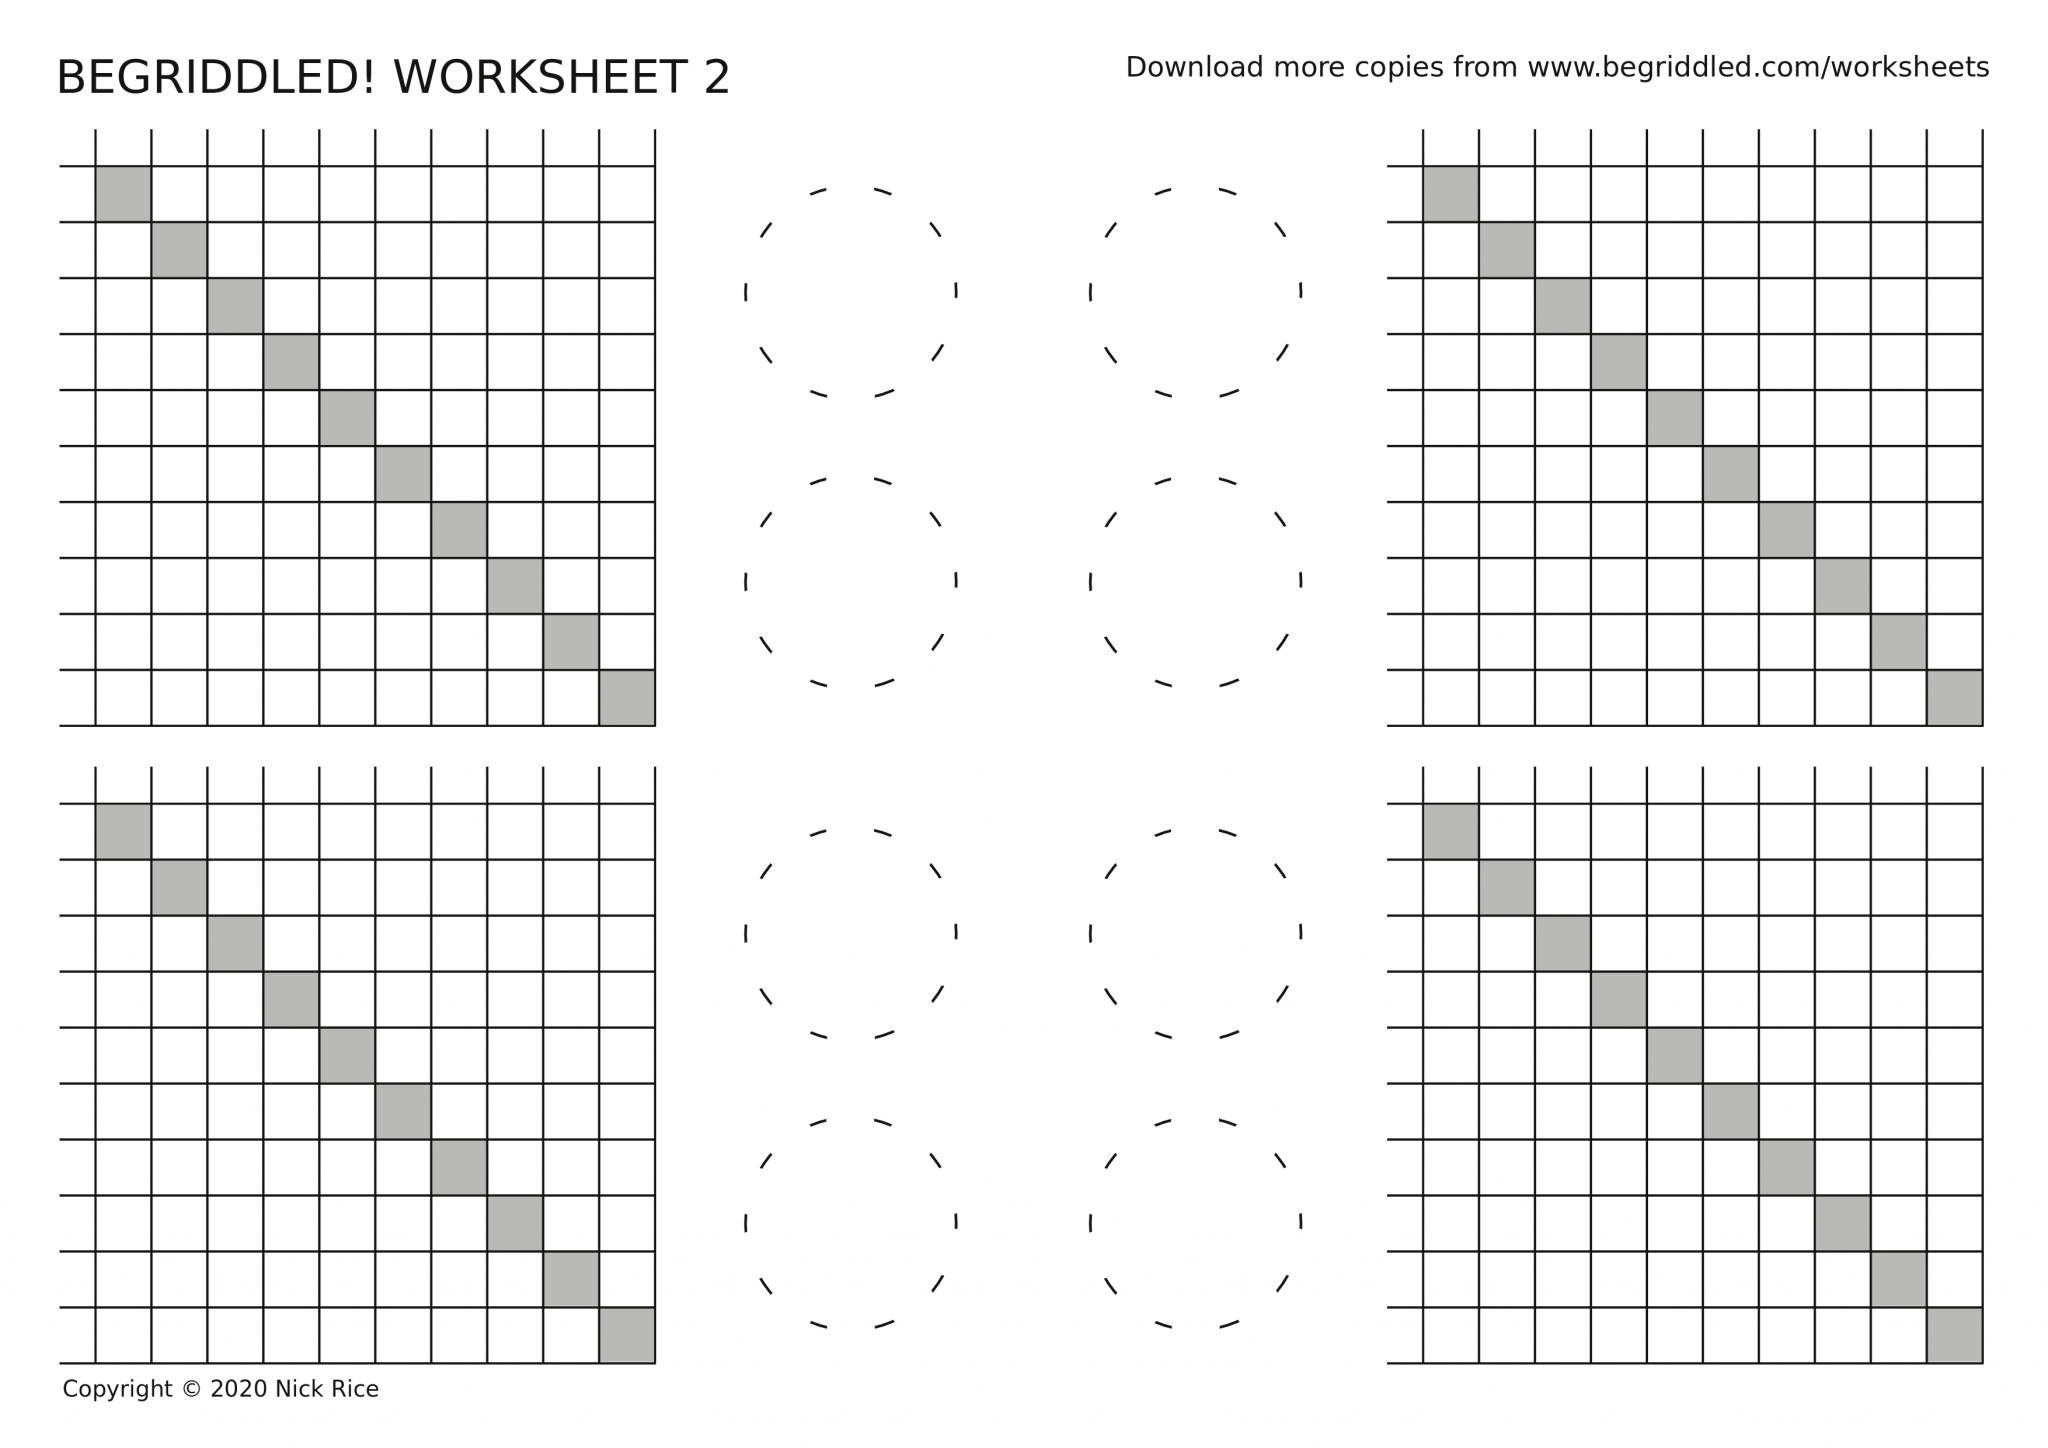 logic-puzzle-worksheets-begriddled